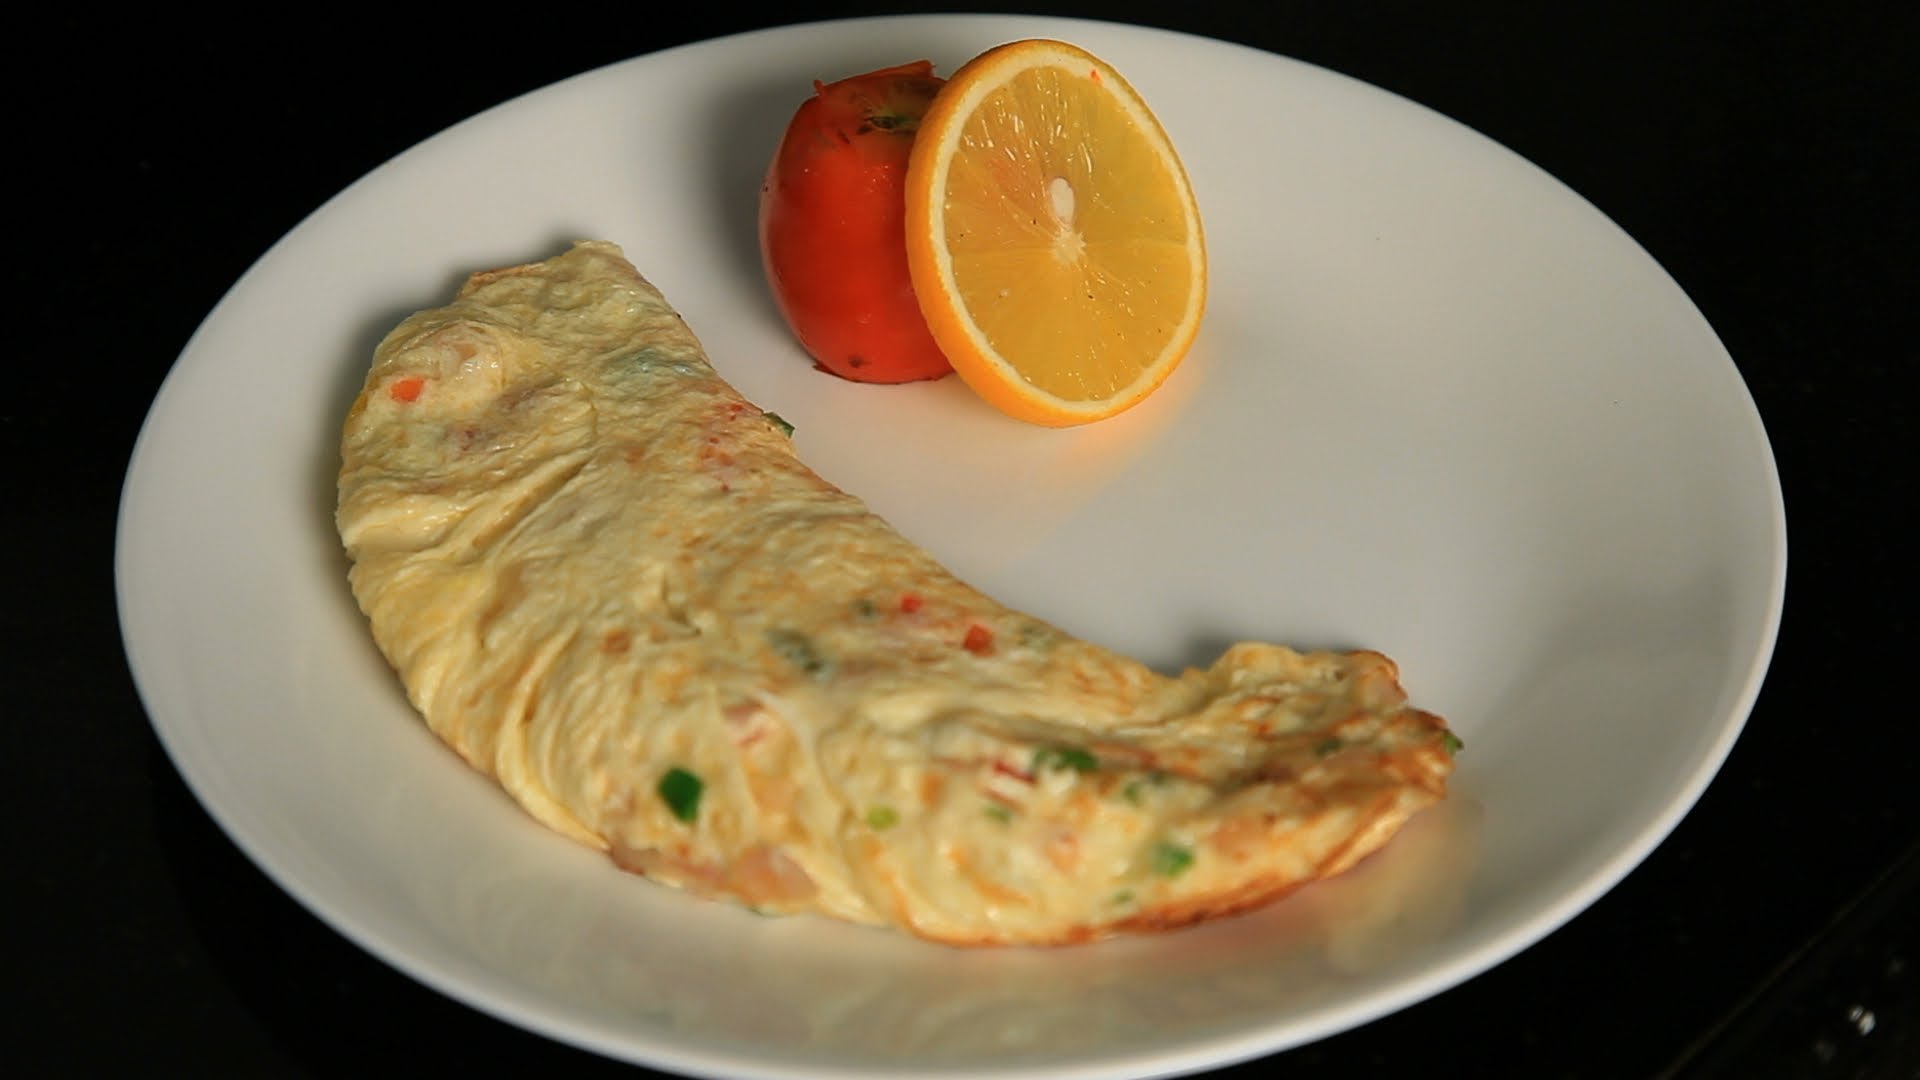 Home-Made Fluffy Egg Omelette - YouTube